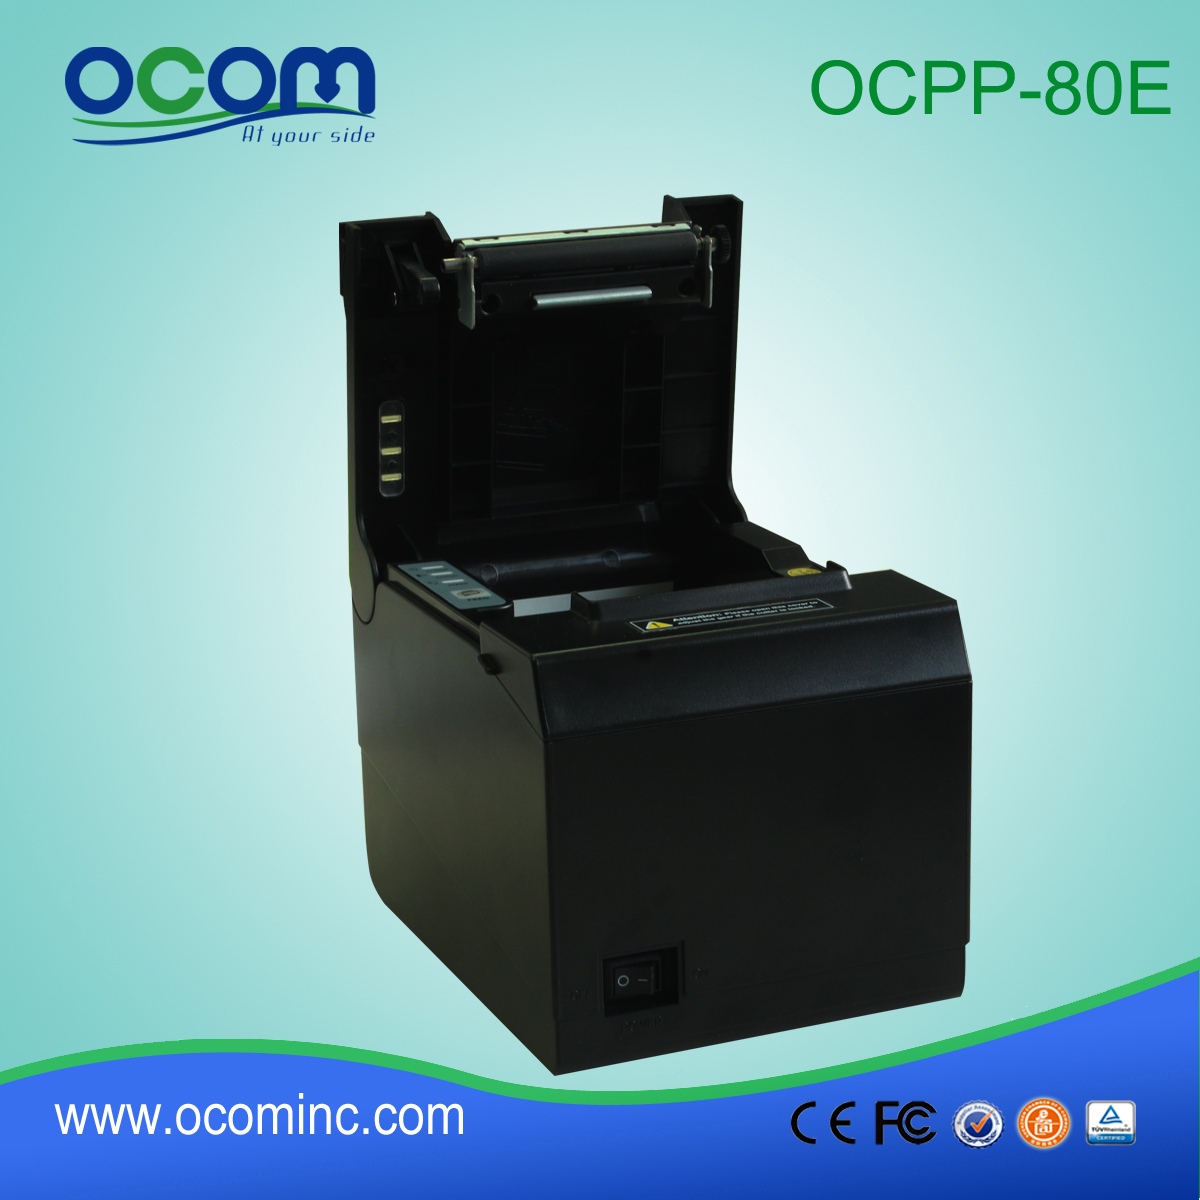 OCPP-80E stampatore della ricevuta di posizione 80 millimetri supporto termico a parete